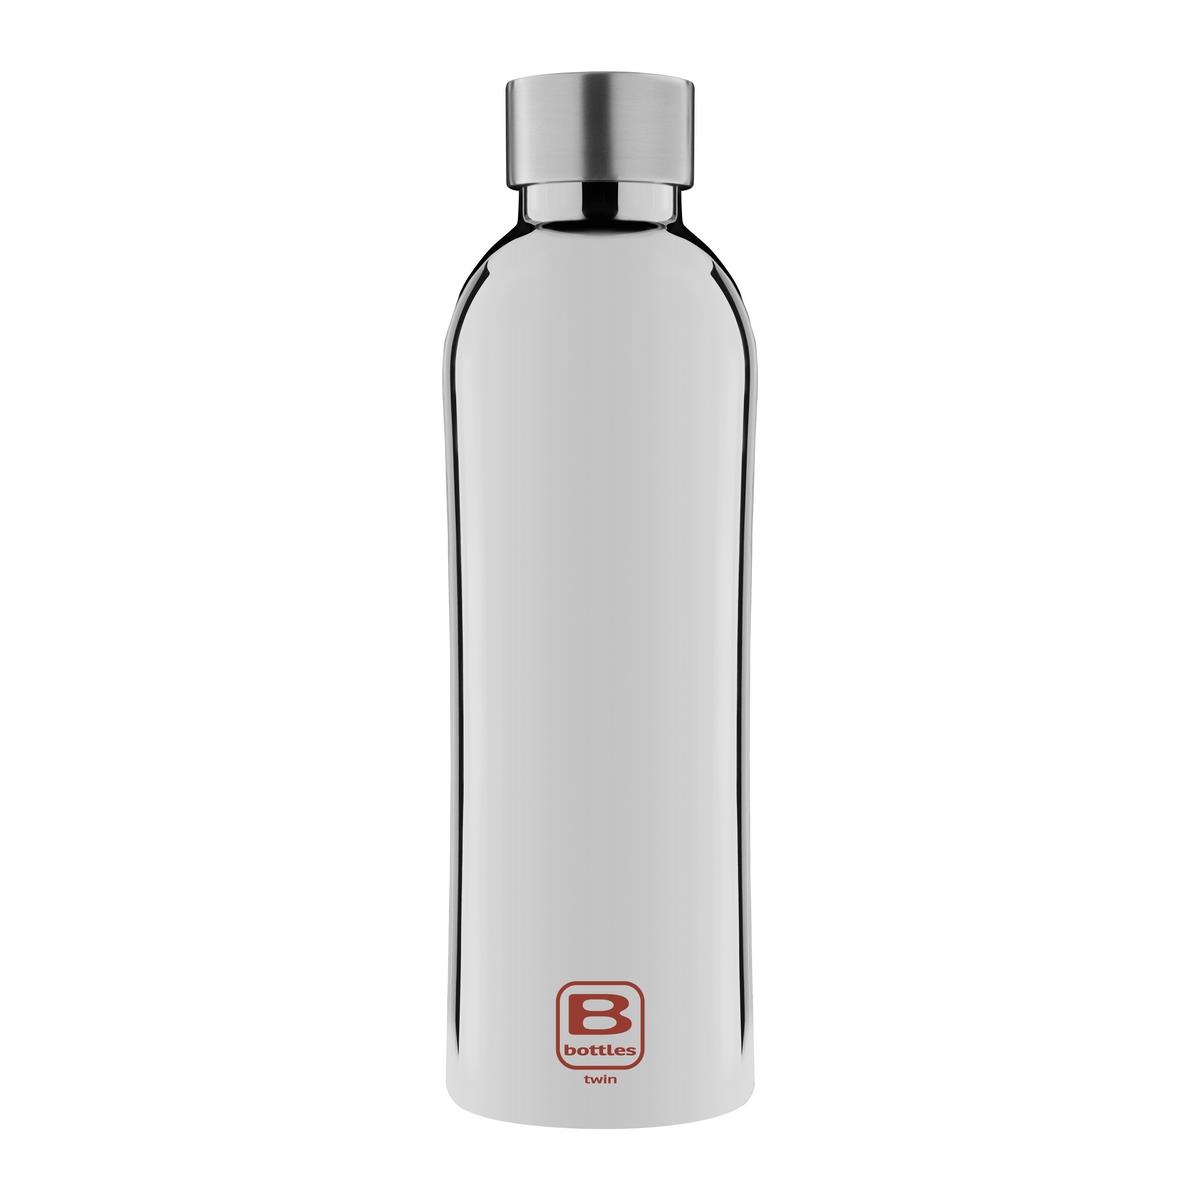 B Bottles Twin - Silver Lux - 800 ml - Bottiglia Termica a doppia parete in acciaio inox 18/10